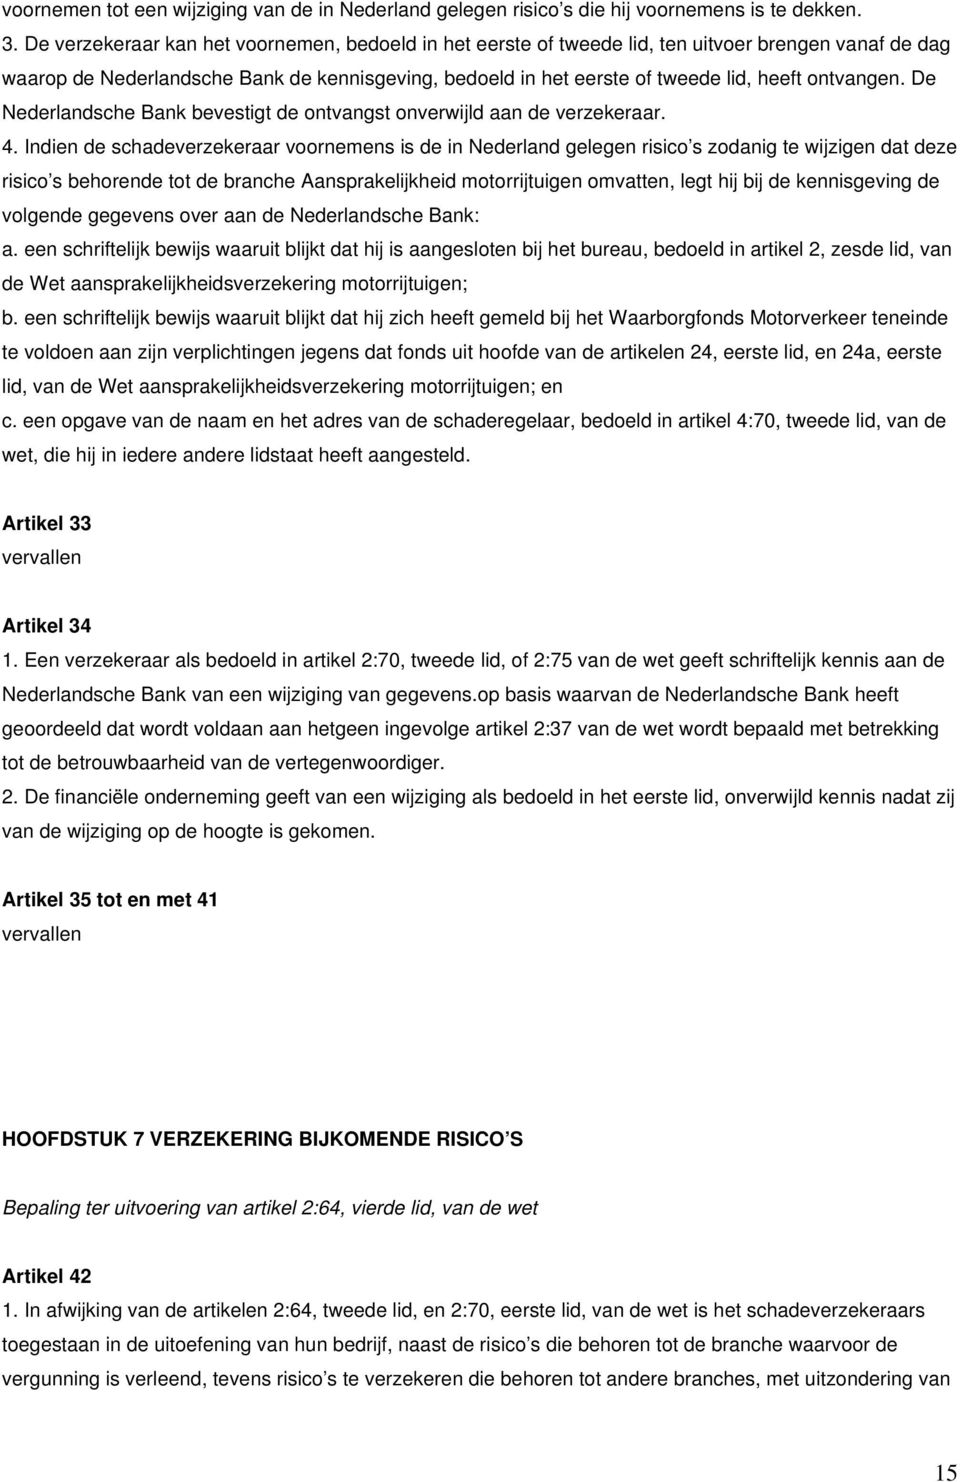 ontvangen. De Nederlandsche Bank bevestigt de ontvangst onverwijld aan de verzekeraar. 4.